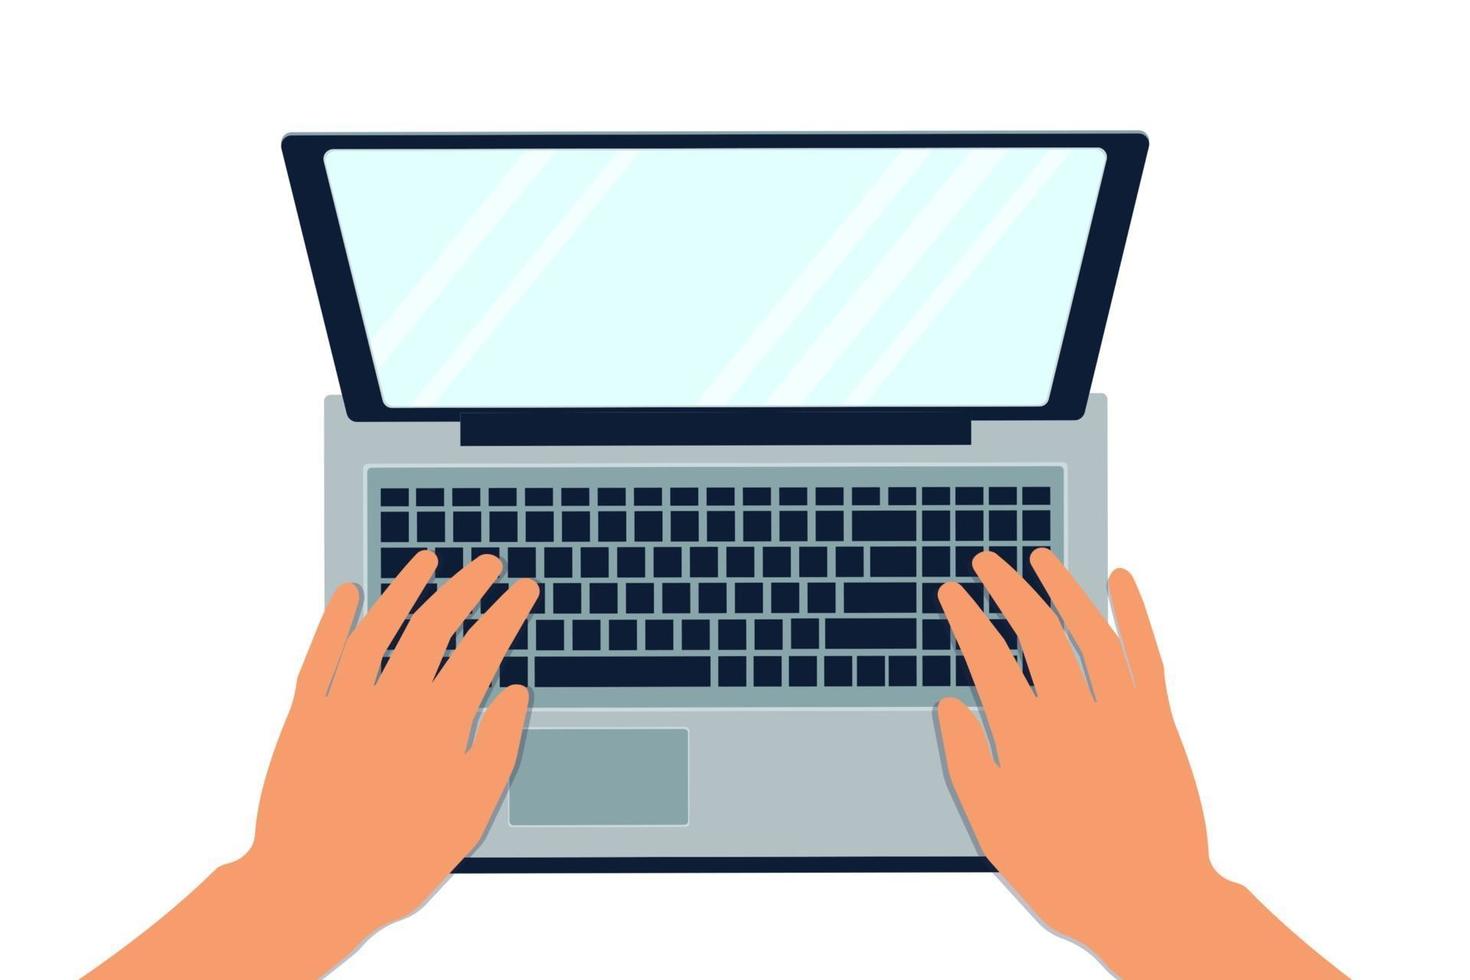 le mani delle donne e degli uomini digitano il testo sulla tastiera del laptop la vista dall'alto che lavora studiando la persona sul posto di lavoro in ufficio vettore